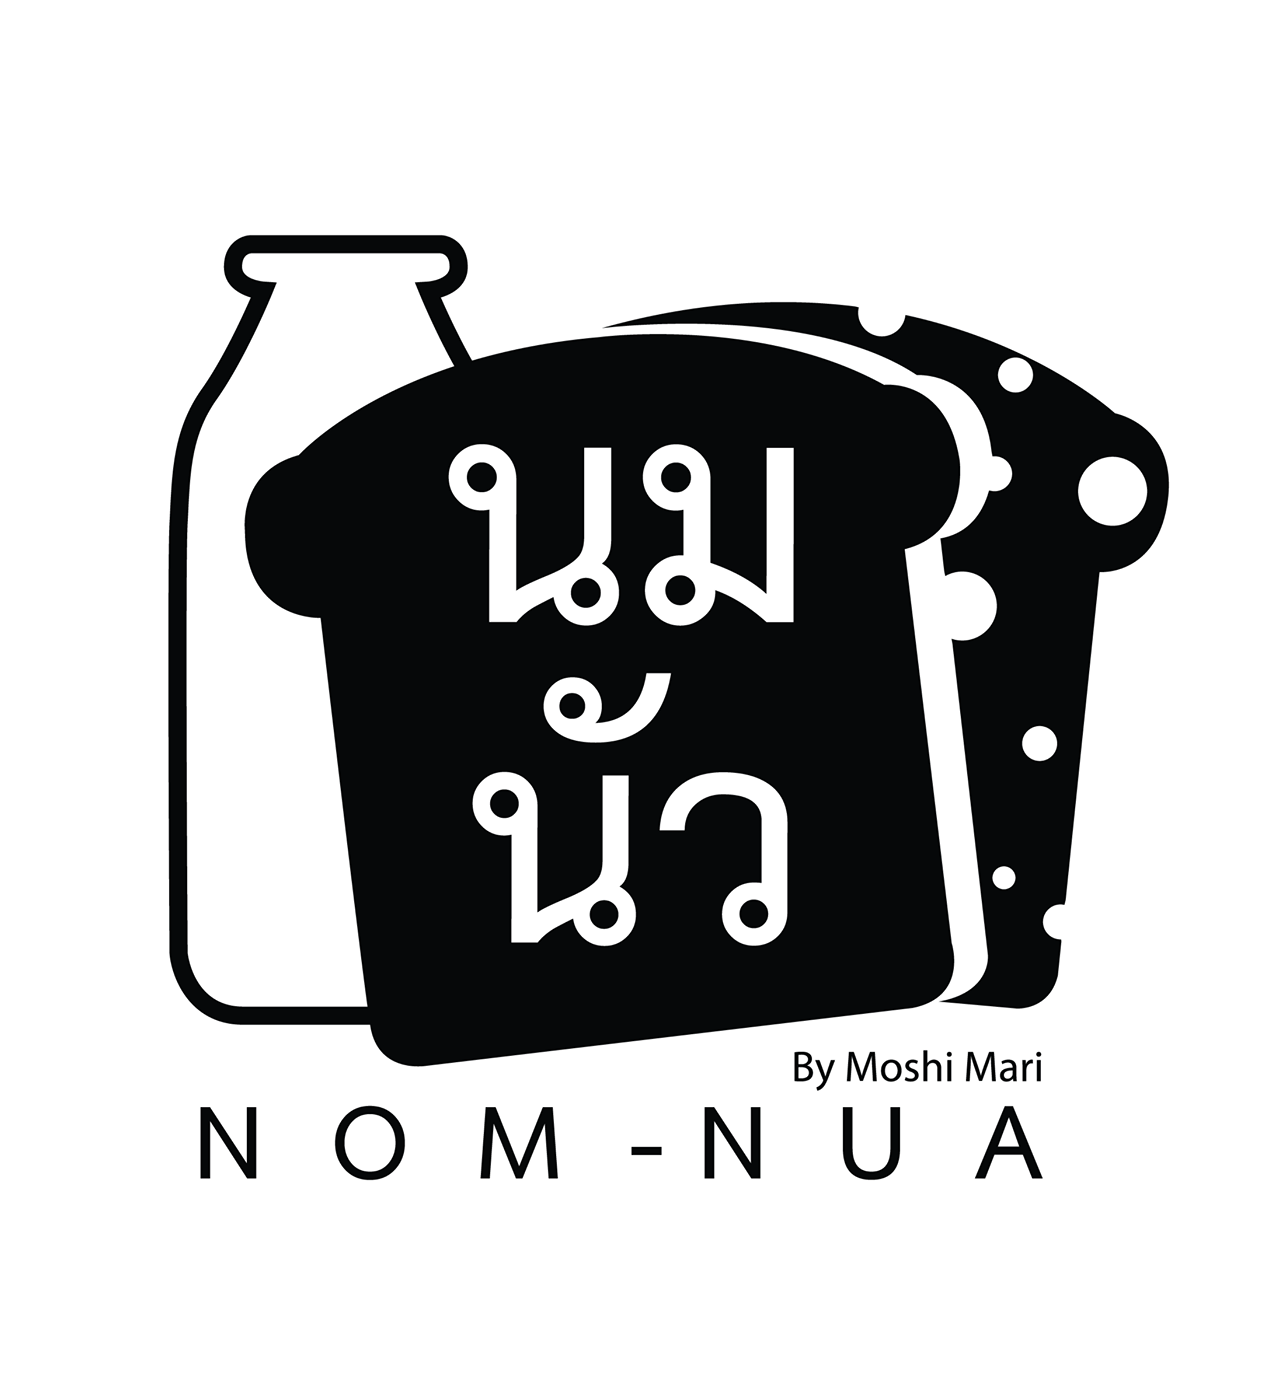 ร้านนมนัว (Nom-Nua) โชคชัย 4